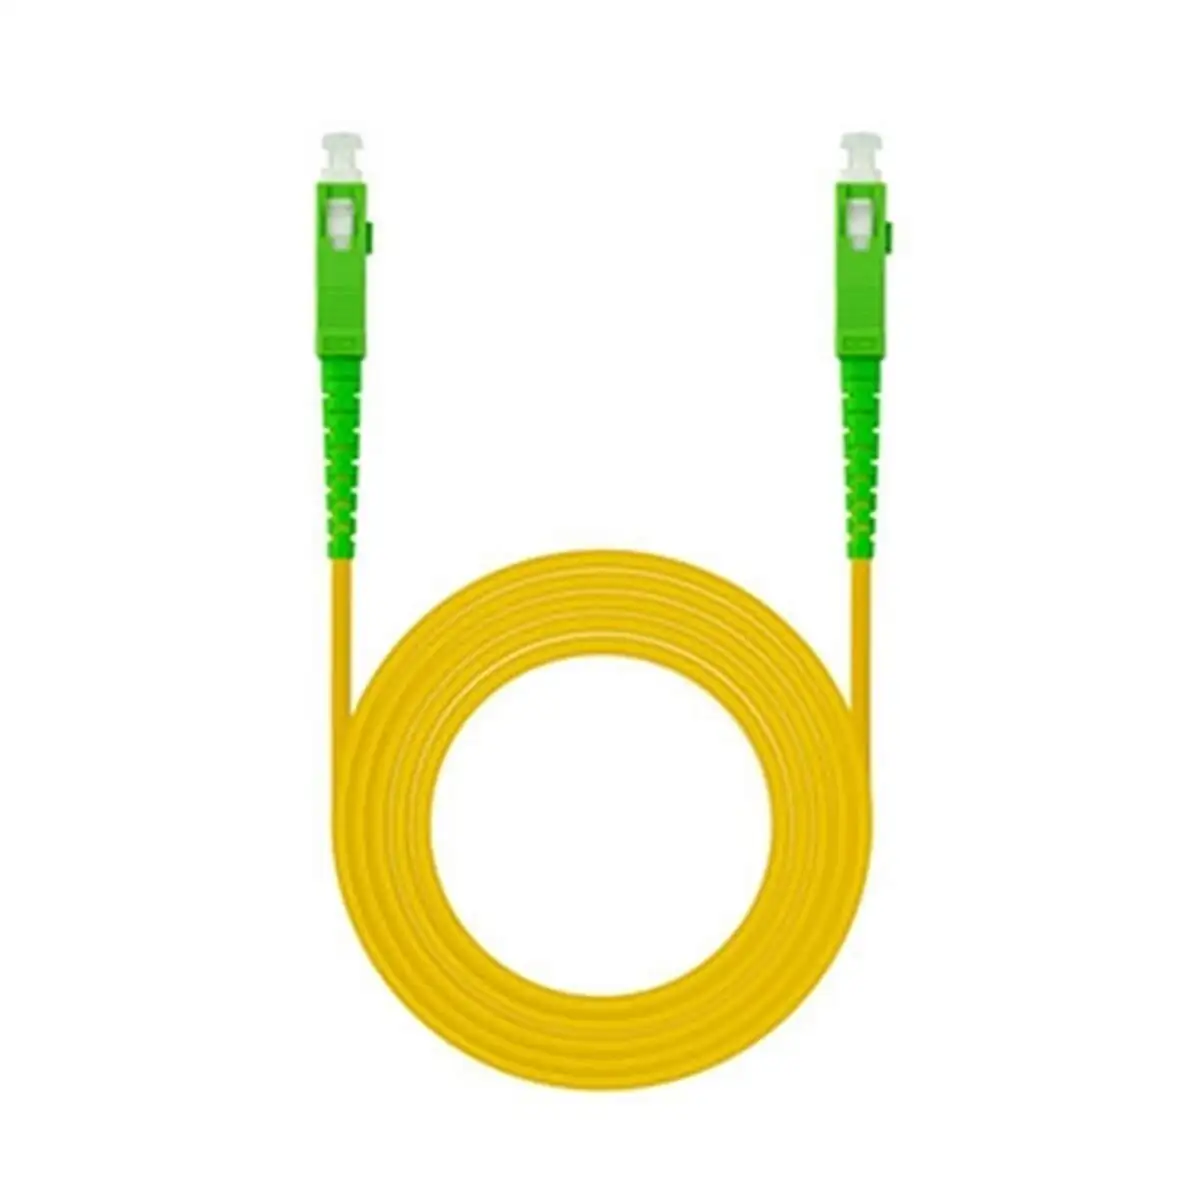 Cable a fibre optique nanocable 10 20 0020 20 m_1995. DIAYTAR SENEGAL - Où Chaque Produit est une Promesse de Qualité. Explorez notre boutique en ligne et choisissez des produits qui répondent à vos exigences élevées.